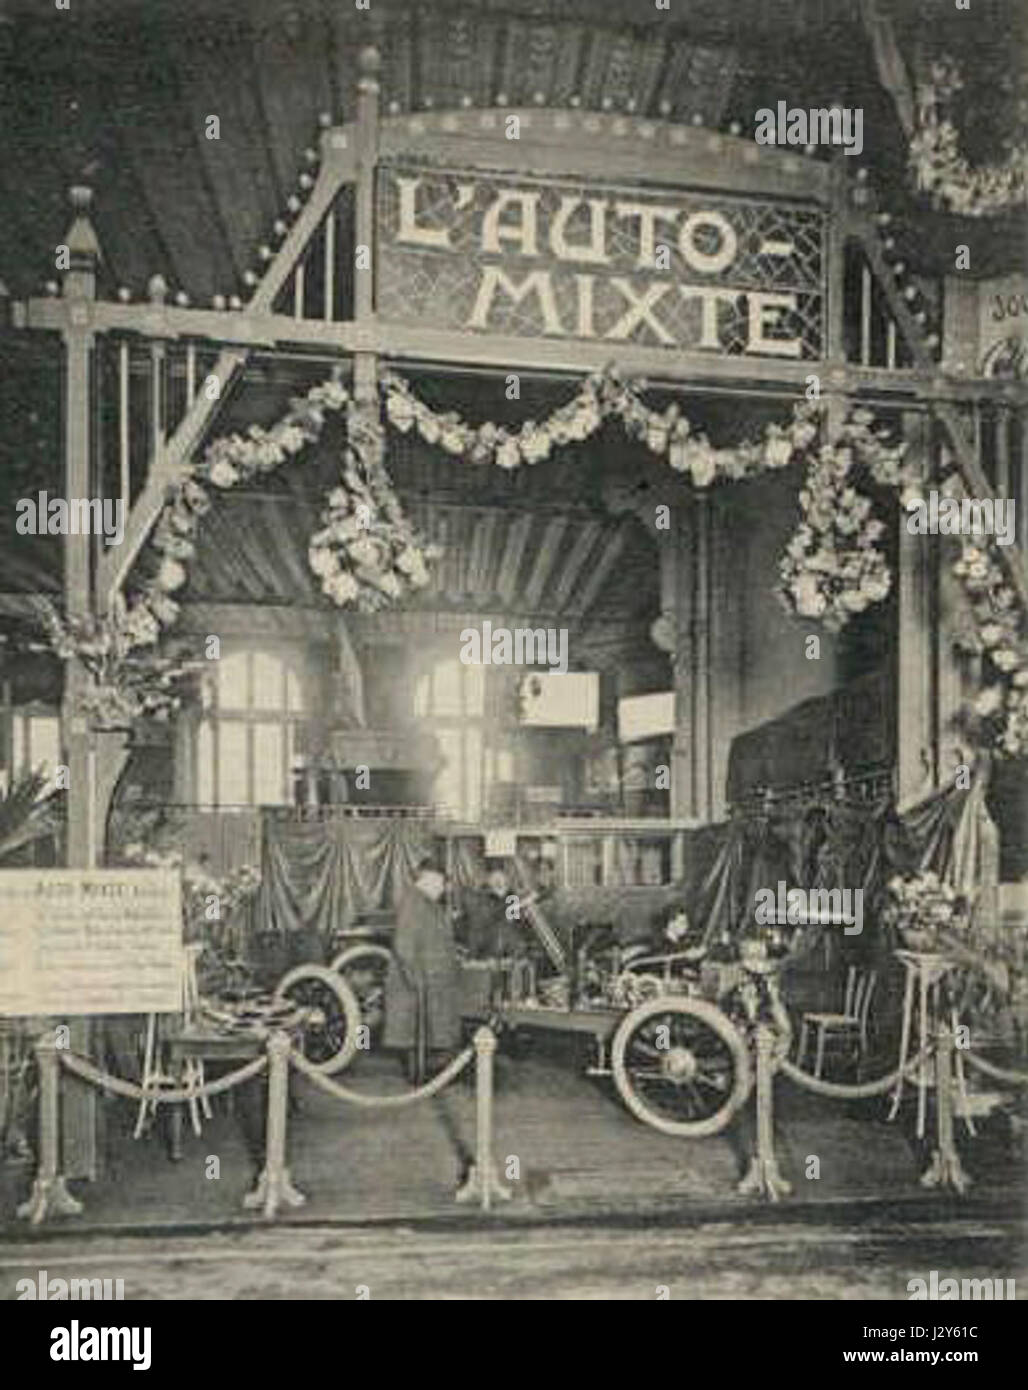 Auto-mixte-Parijs-1906 Stock Photo